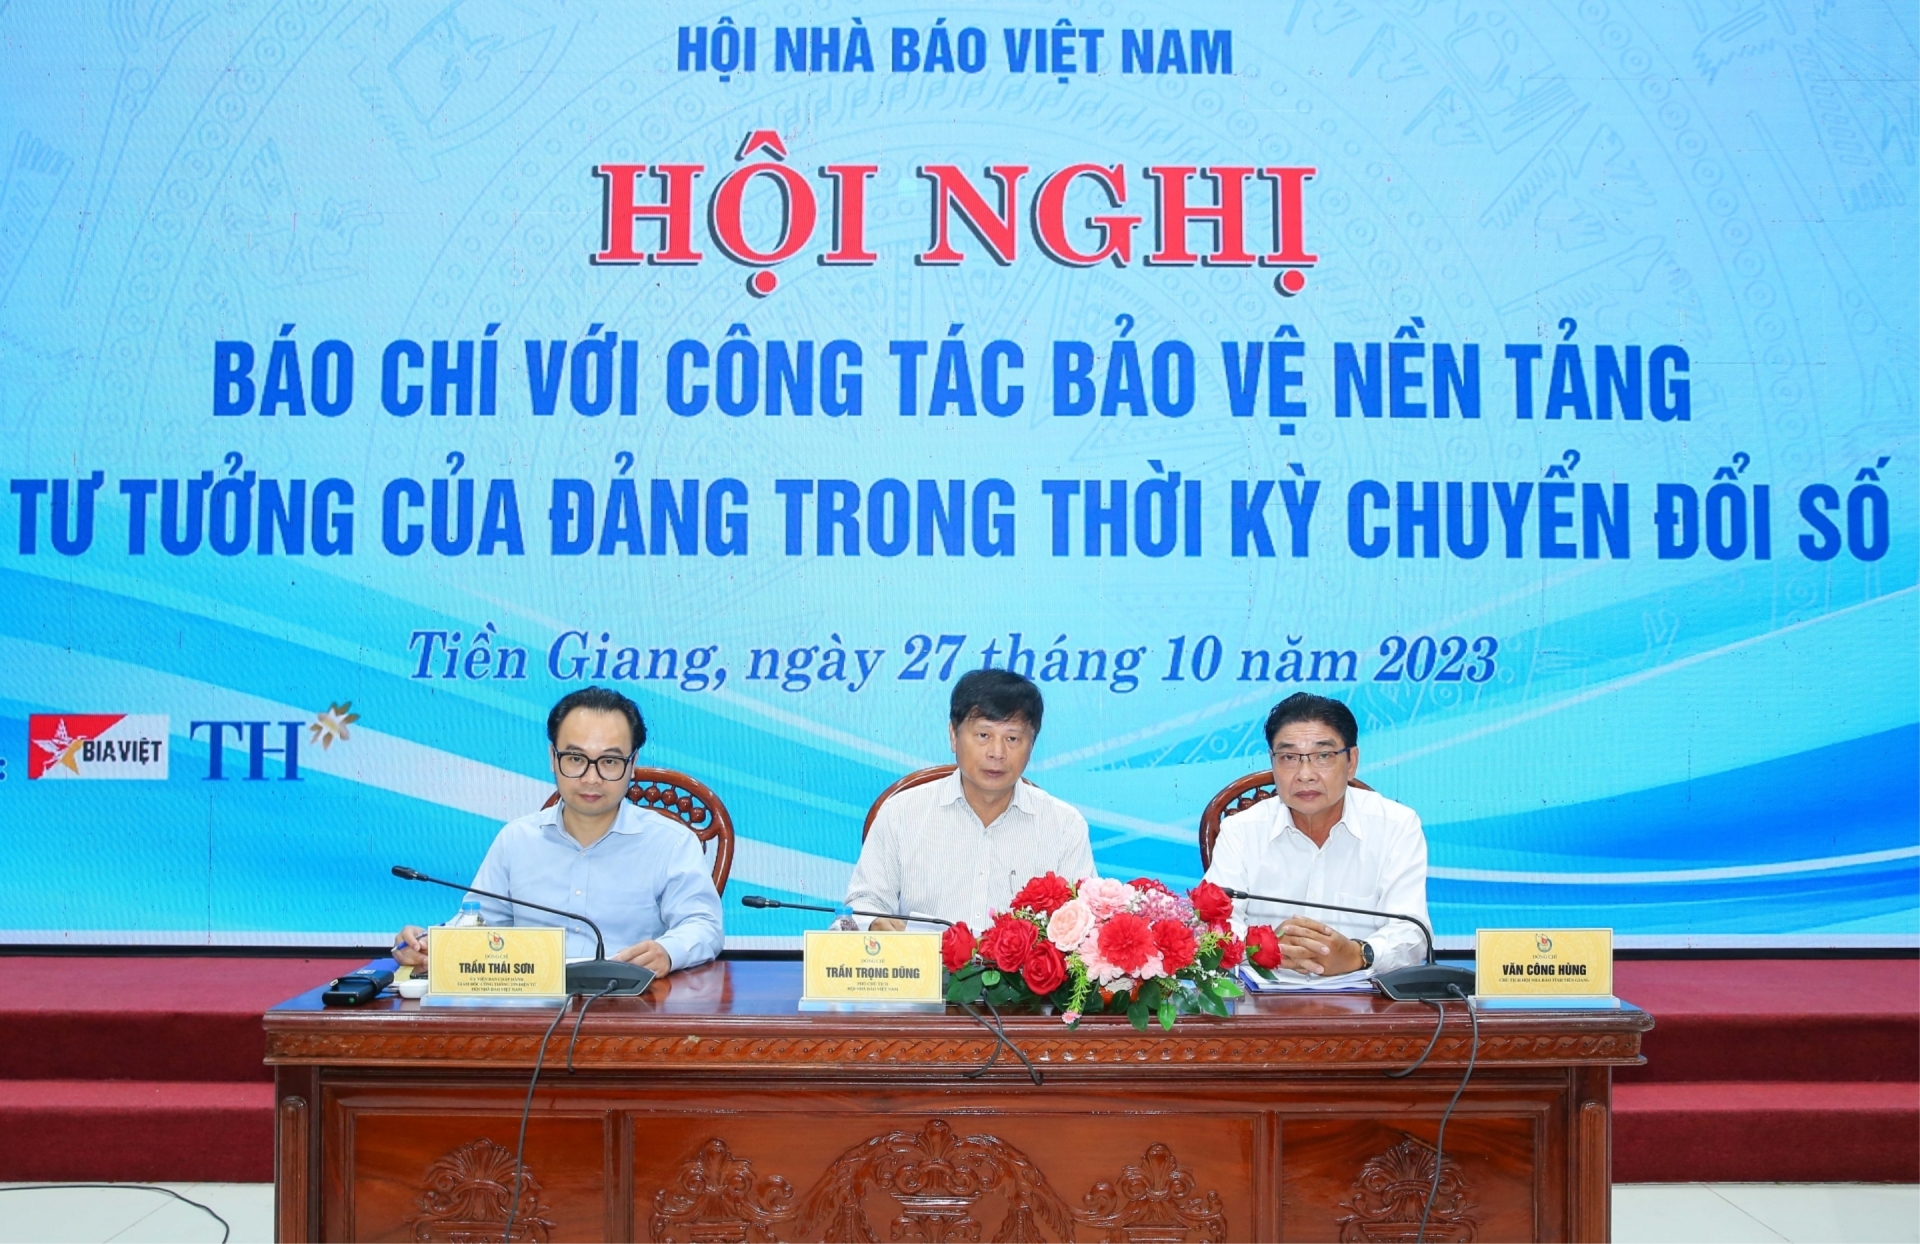 Hội Nhà báo Việt Nam tổ chức hội nghị “Báo chí với công tác bảo vệ nền tảng tư tưởng của Đảng trong thời kỳ chuyển đổi số ngày 27/10/2023